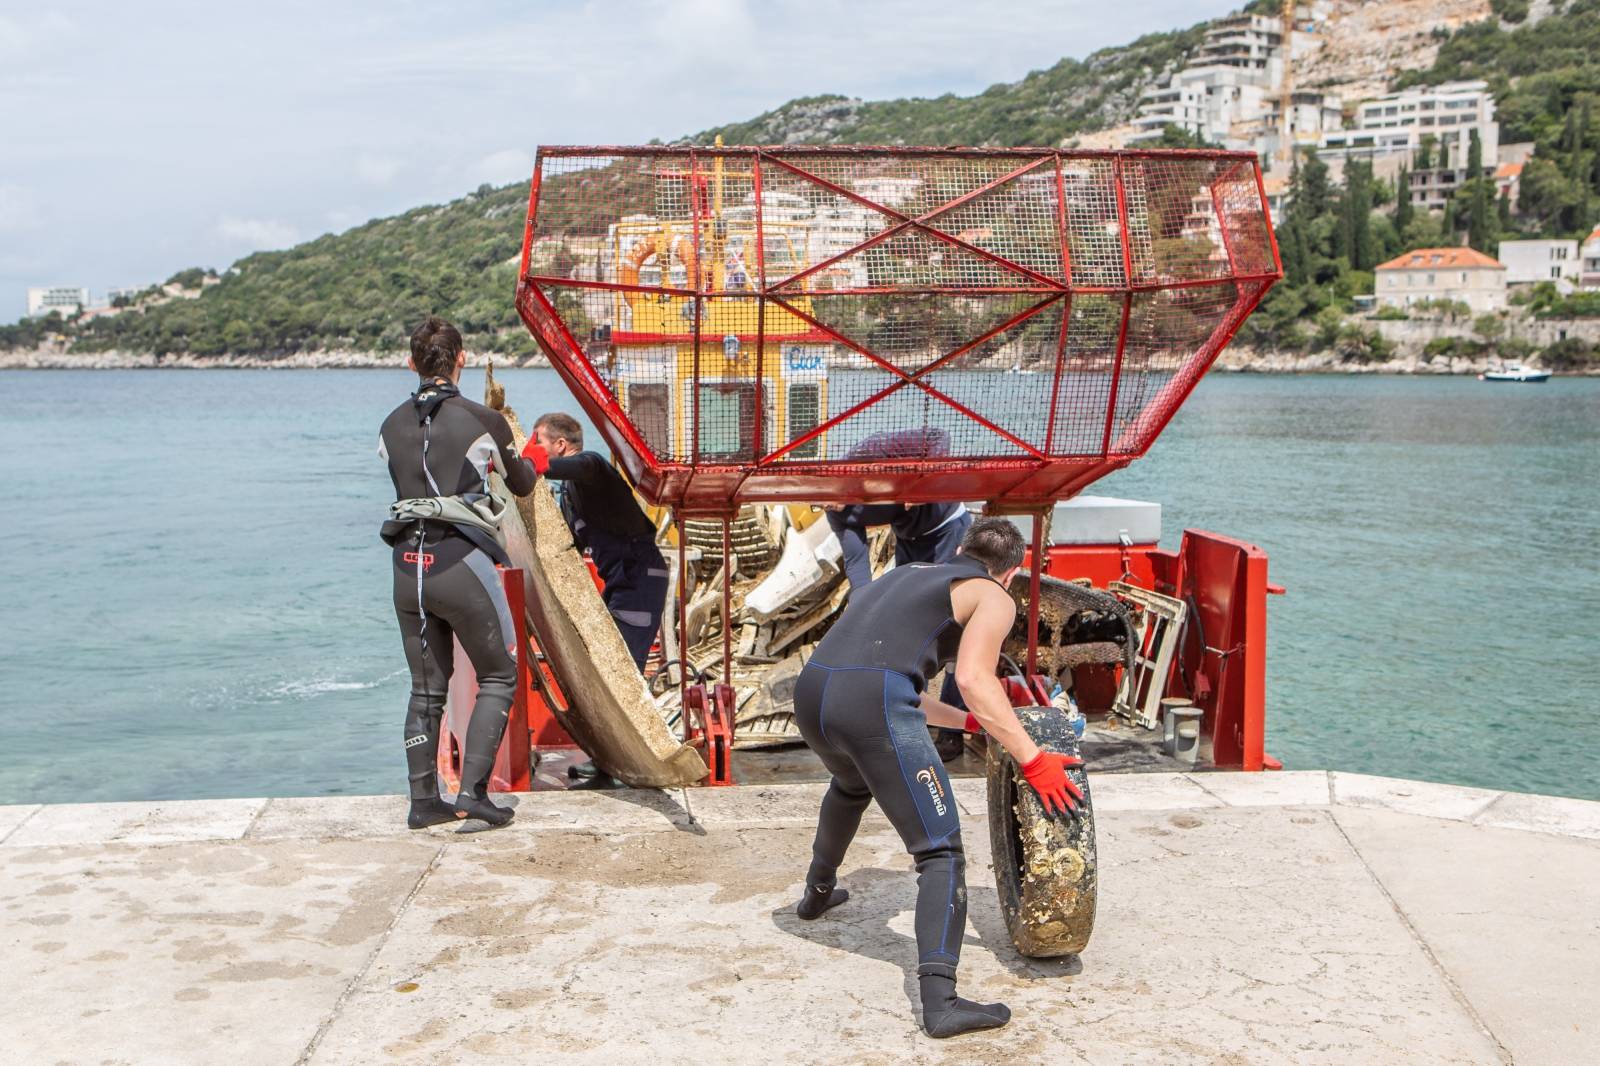 Dubrovnik: EkoloÅ¡ka akcija Ã¨iÅ¡Ã¦enja podmorja pod nazivom Eko Dubrovnik 2019